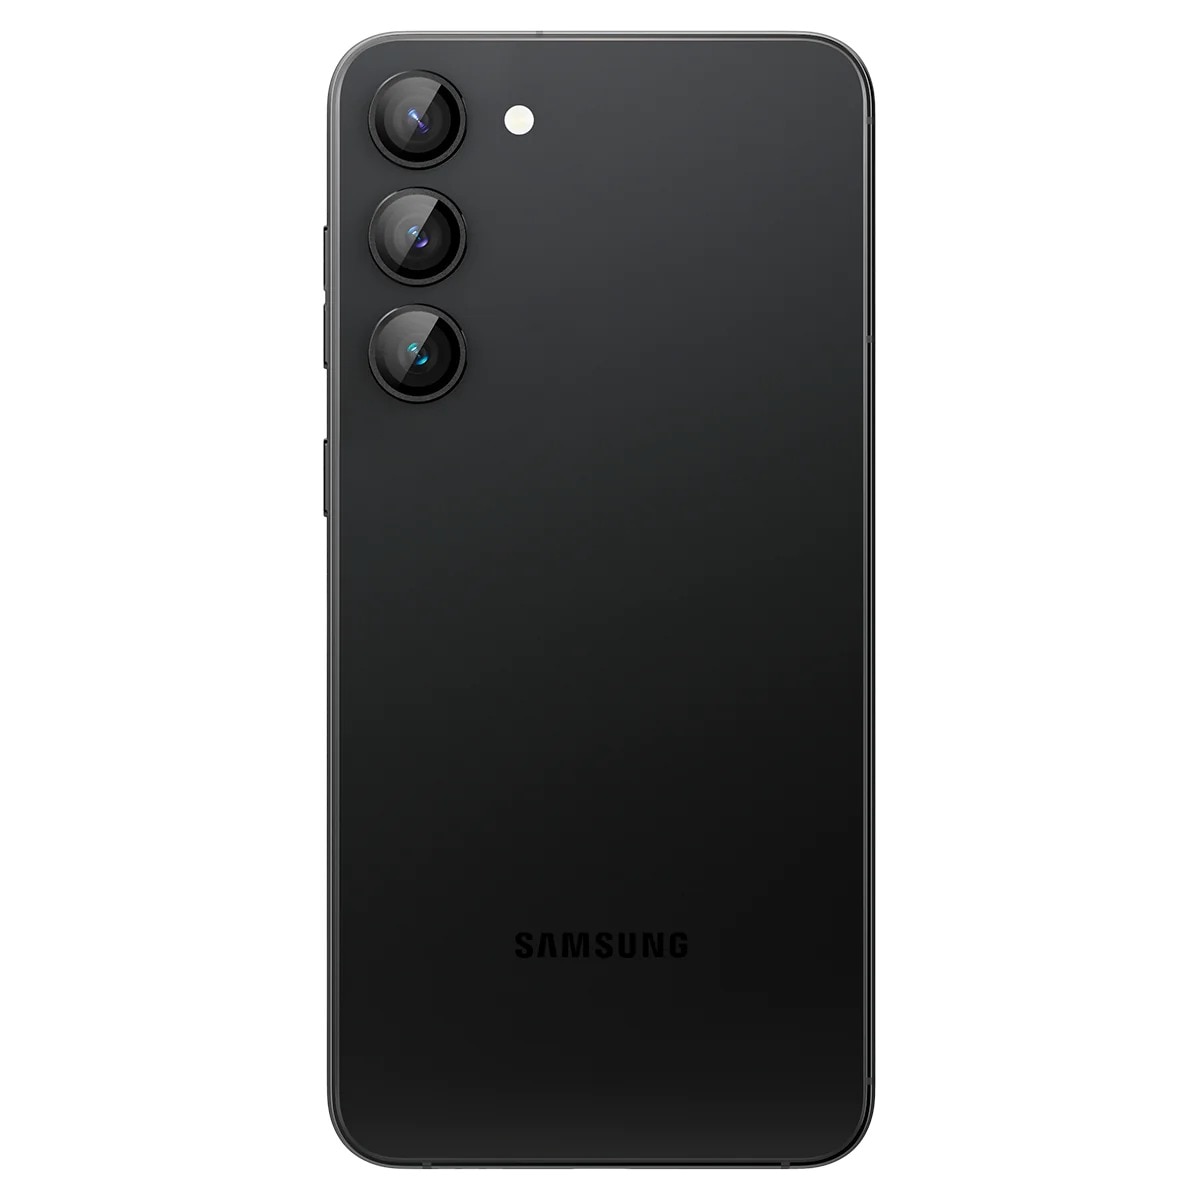 Samsung Galaxy S23/S23 Plus EZ Fit Optik Pro Lens Protector (2-pack)